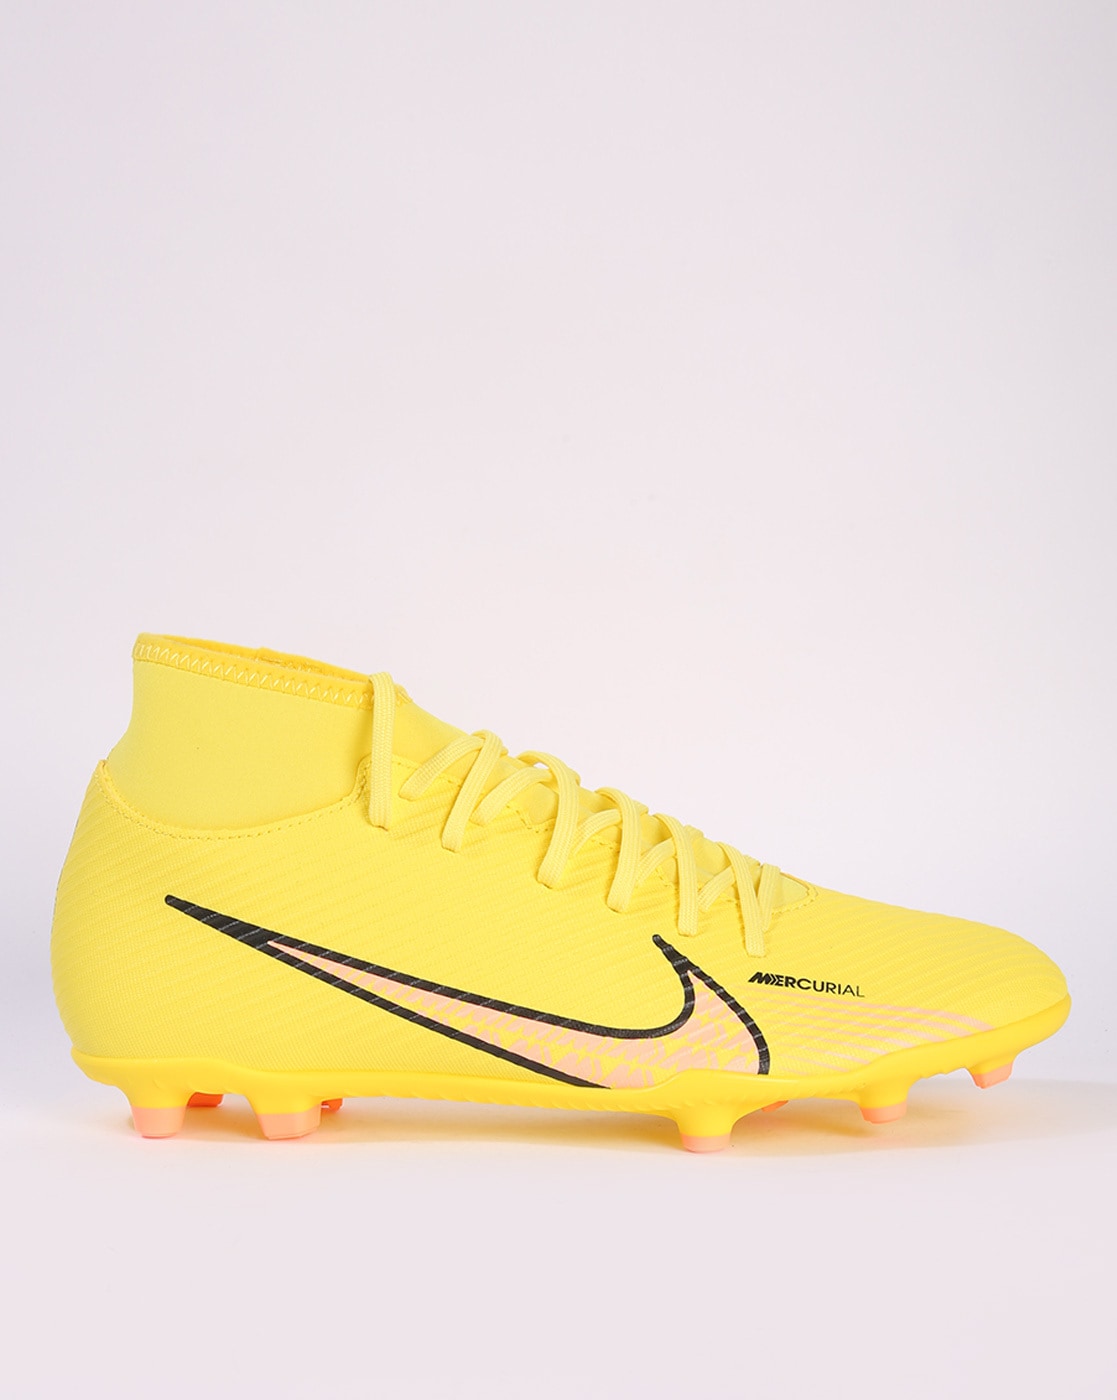 Mens Football Shoes | Shop adidas Mens Football Boots - adidas India